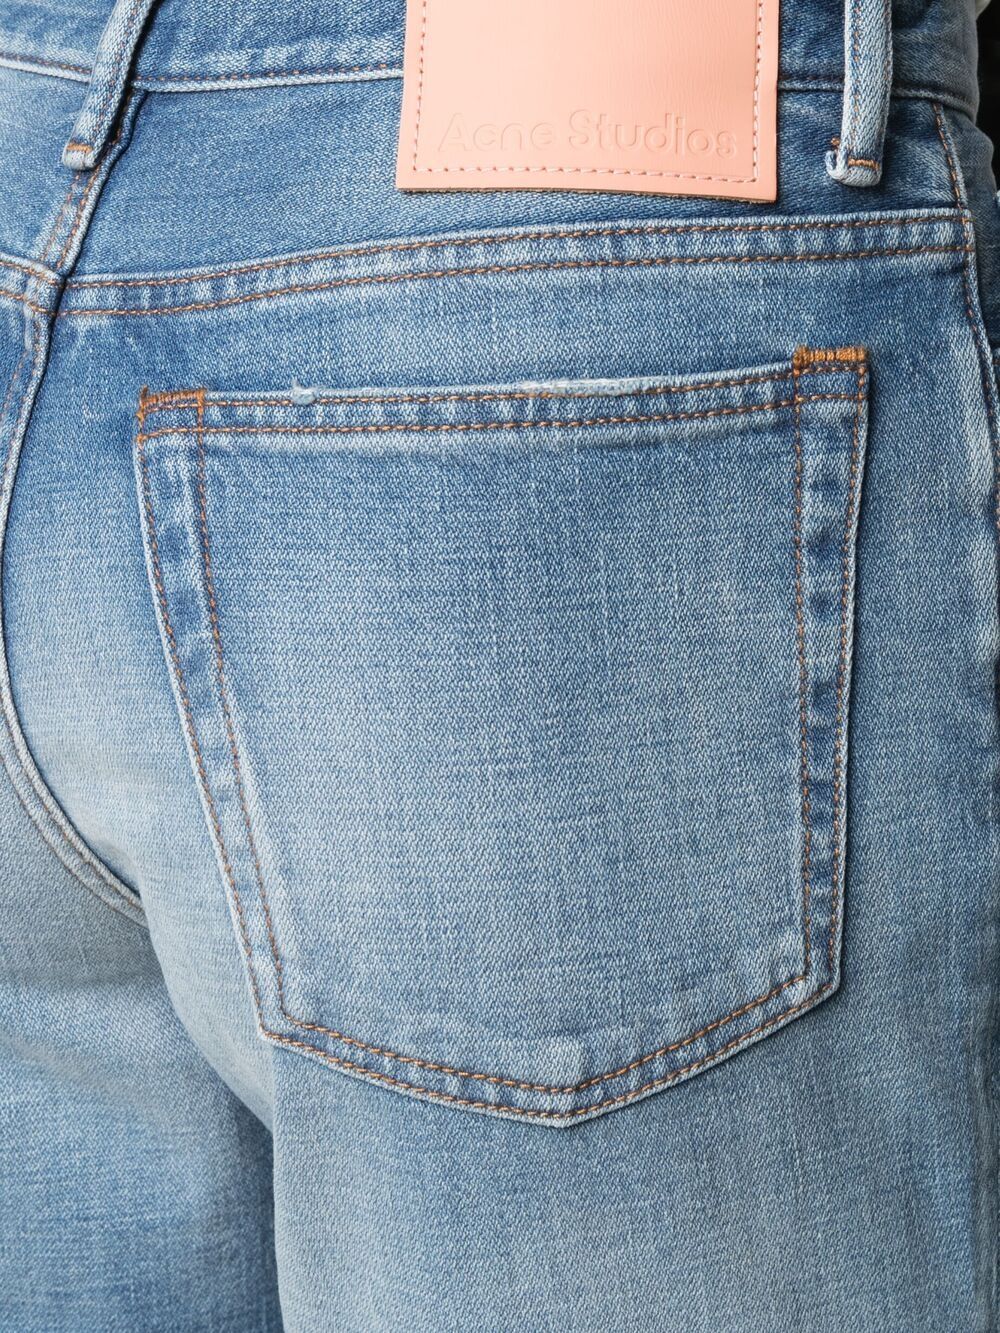 фото Acne studios расклешенные джинсы с завышенной талией